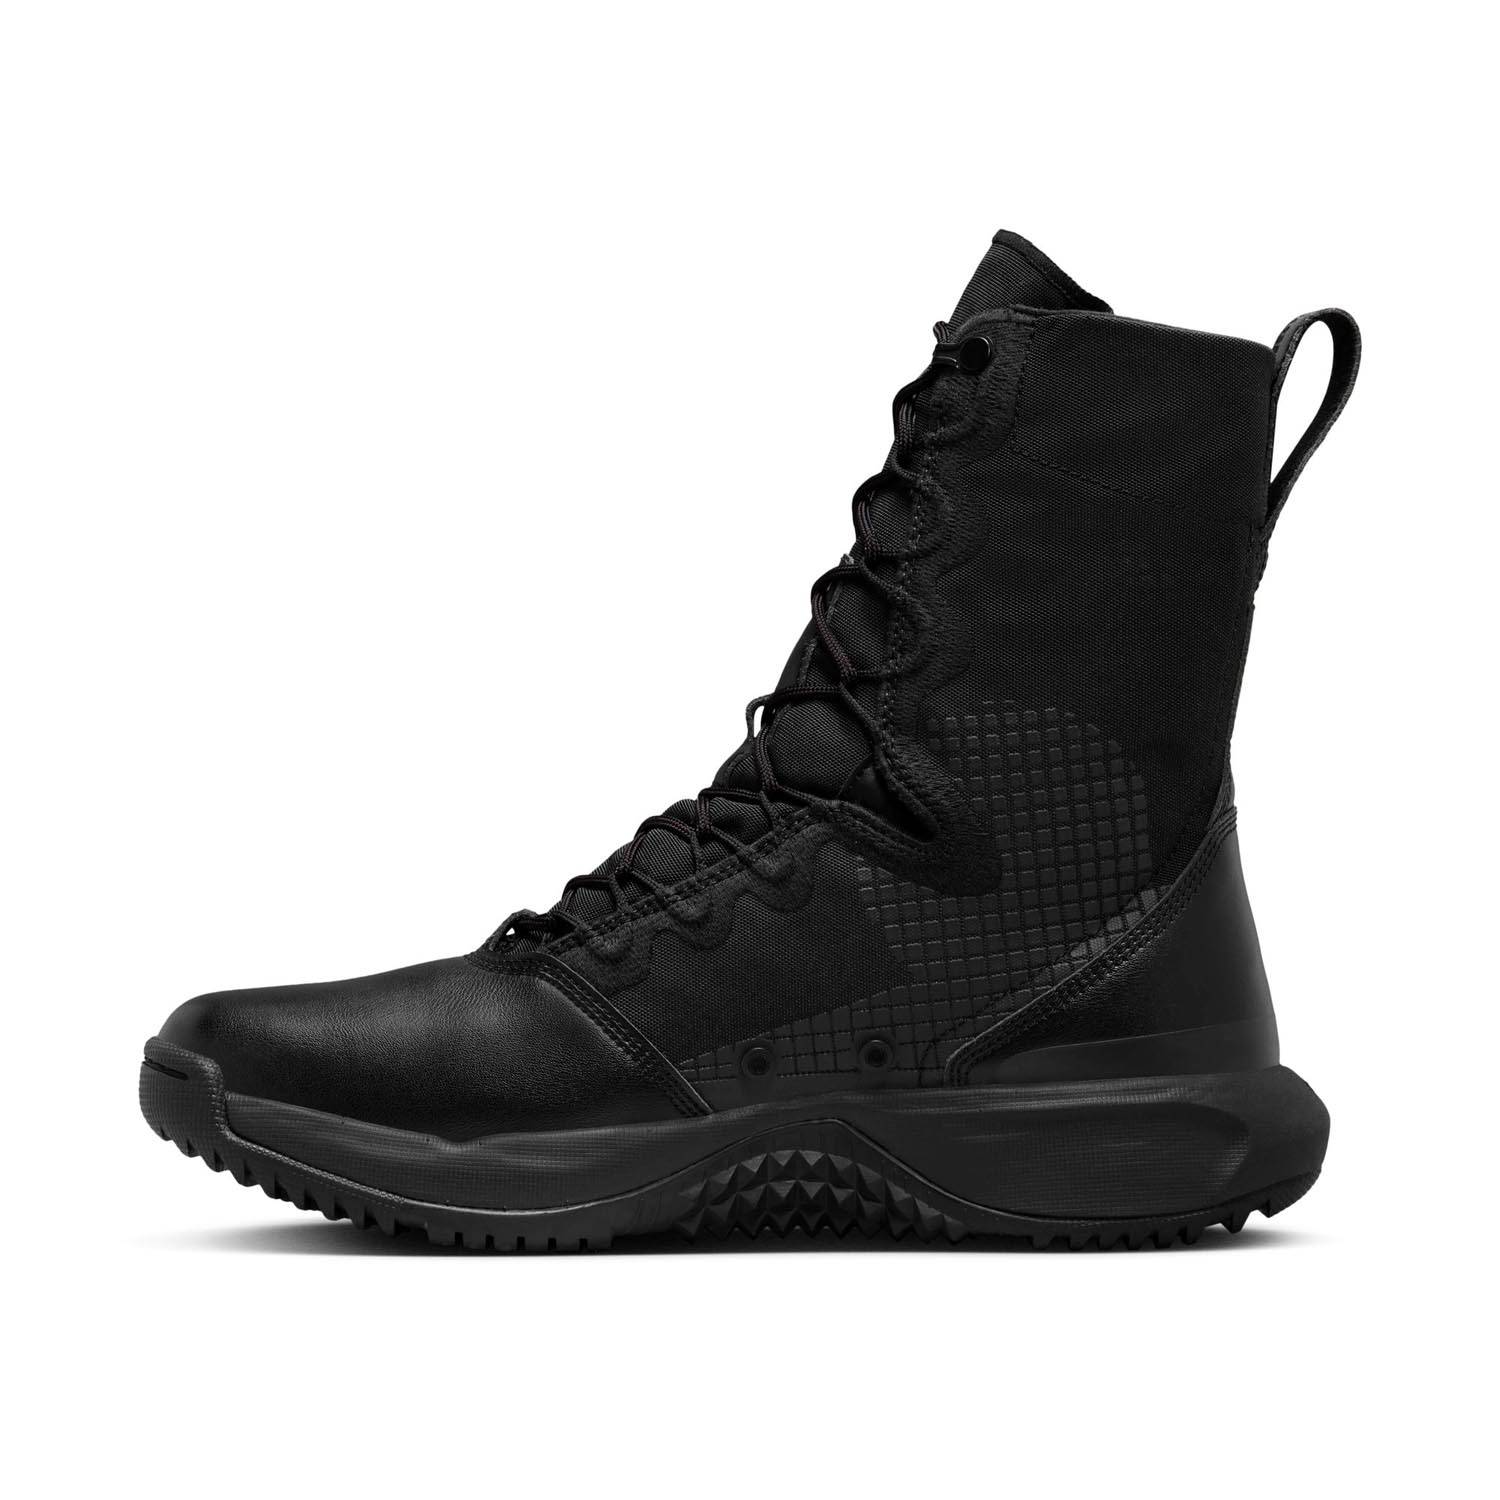 Nike SFB B2 Boots | U.S. Patriot Tactical